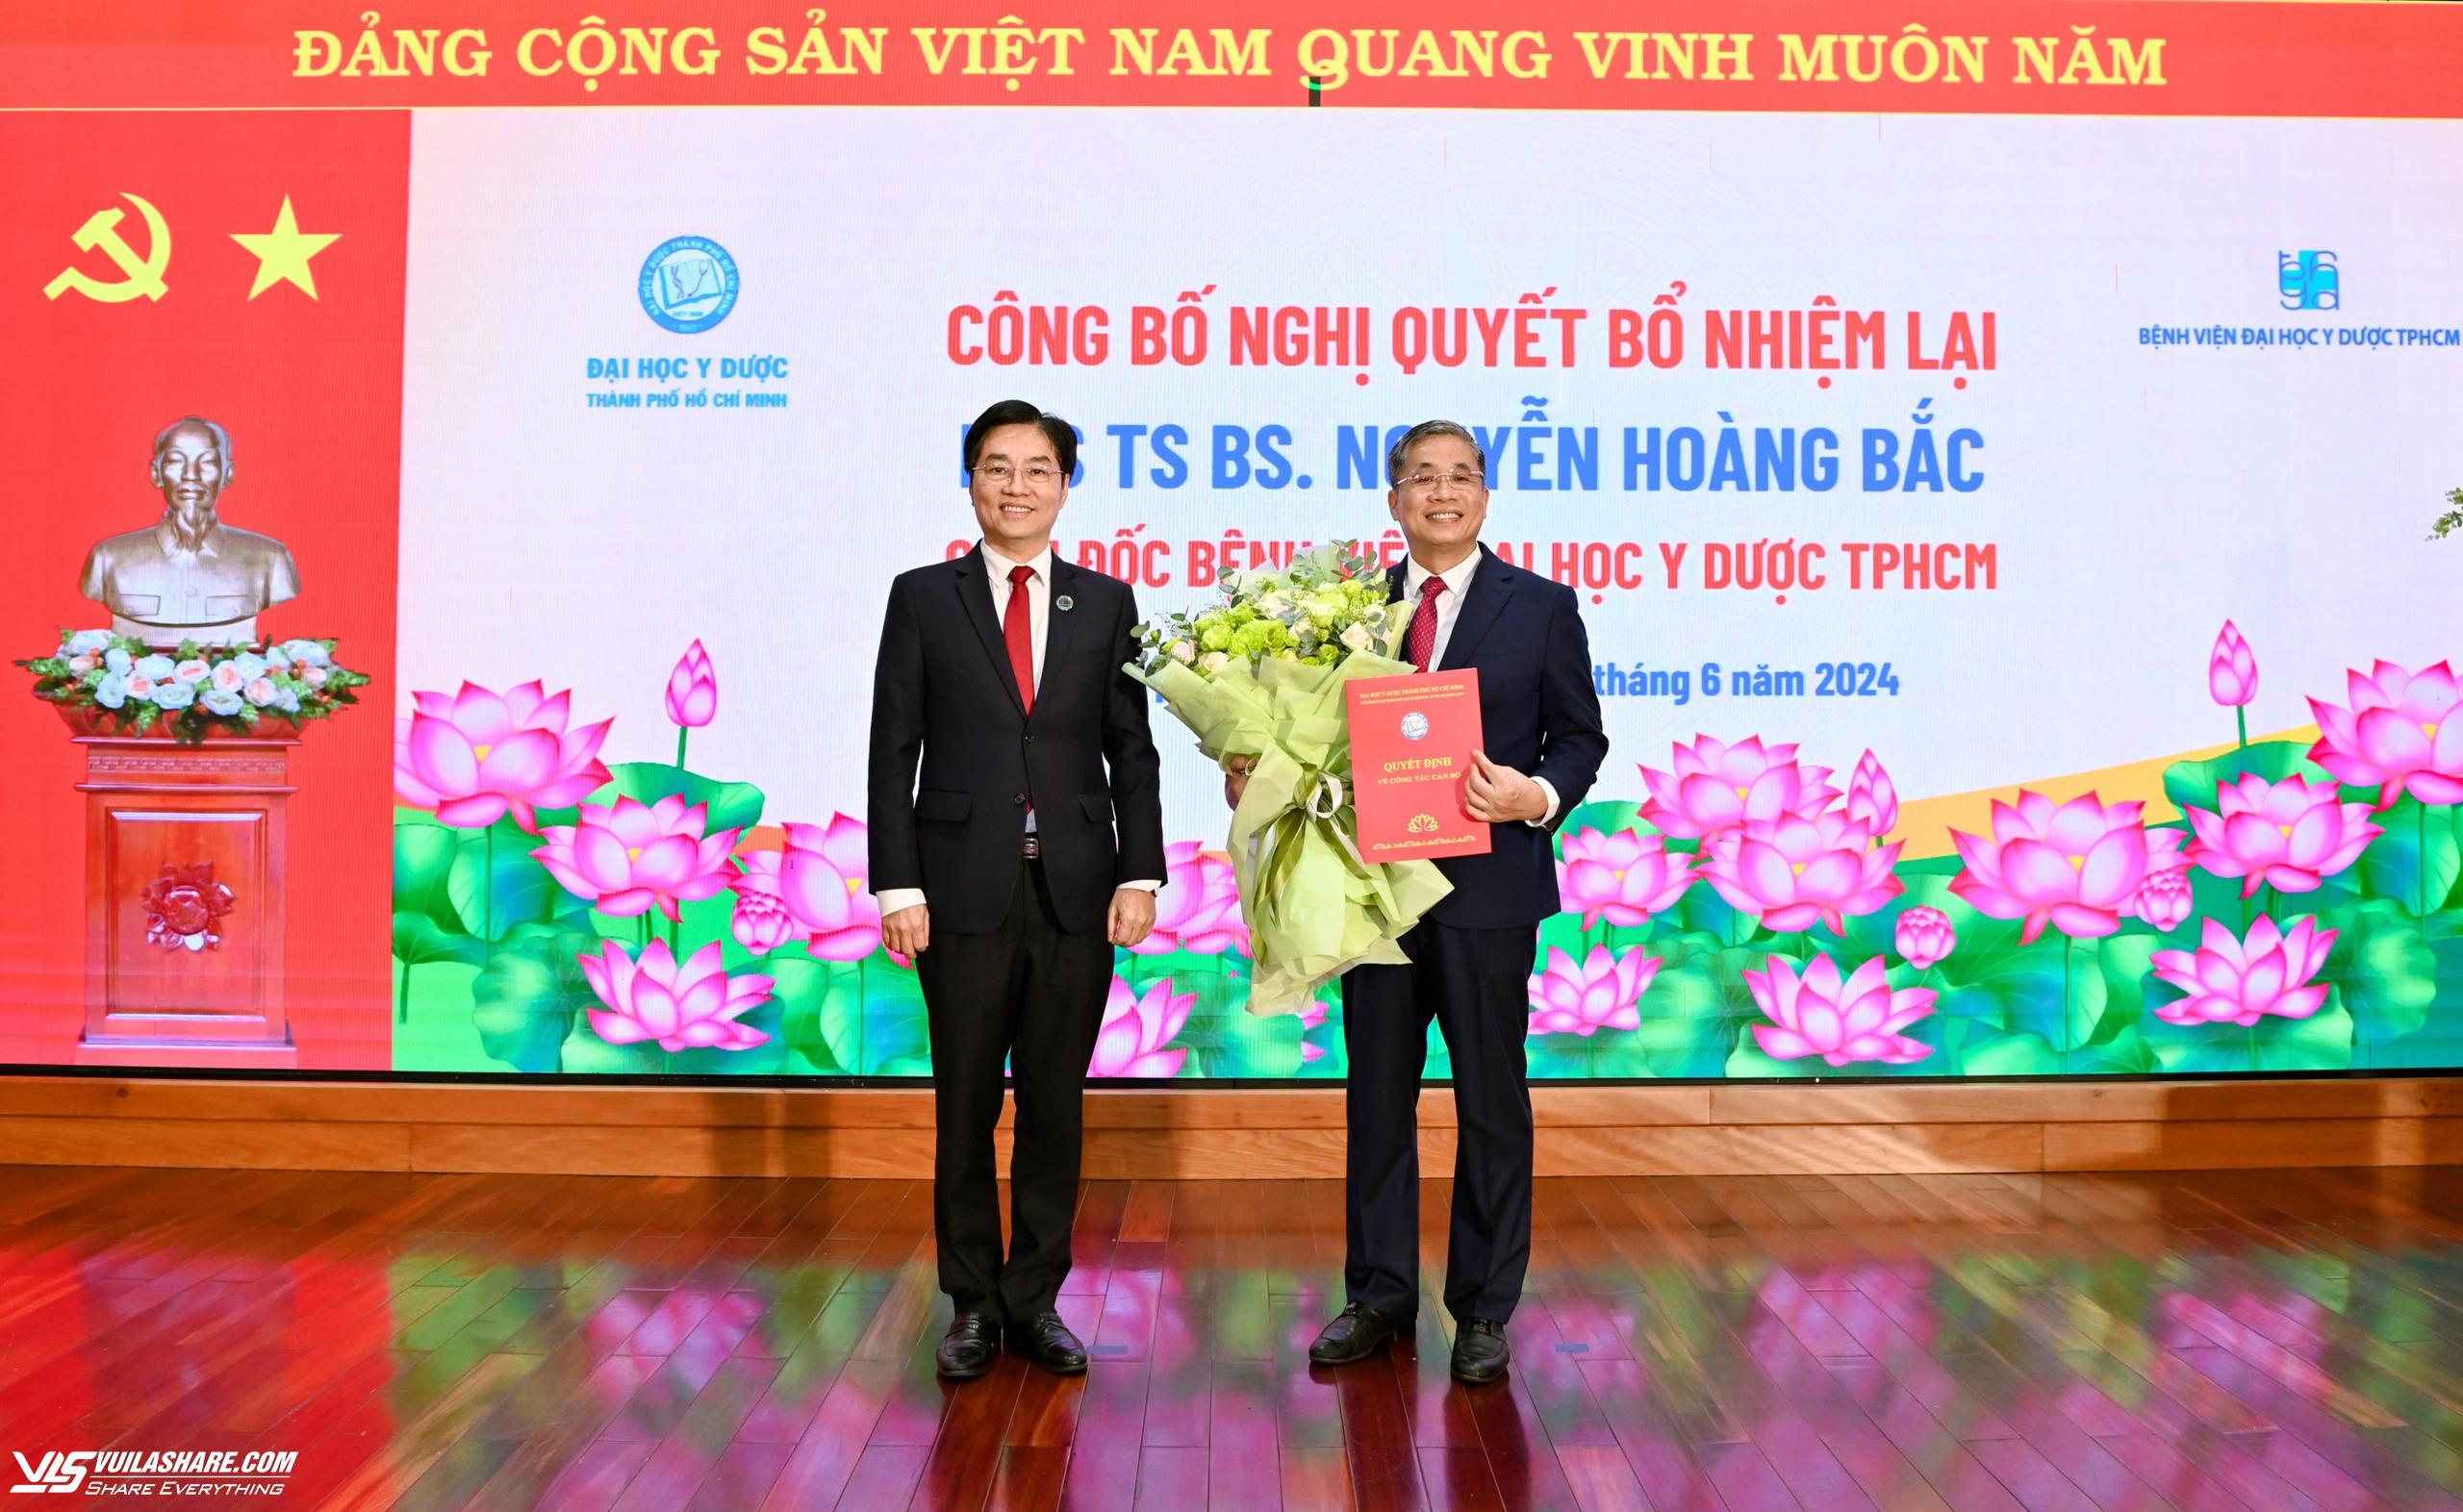 PGS-TS Nguyễn Hoàng Bắc tiếp tục làm Giám đốc Bệnh viện đại học Y Dược TP.HCM- Ảnh 1.